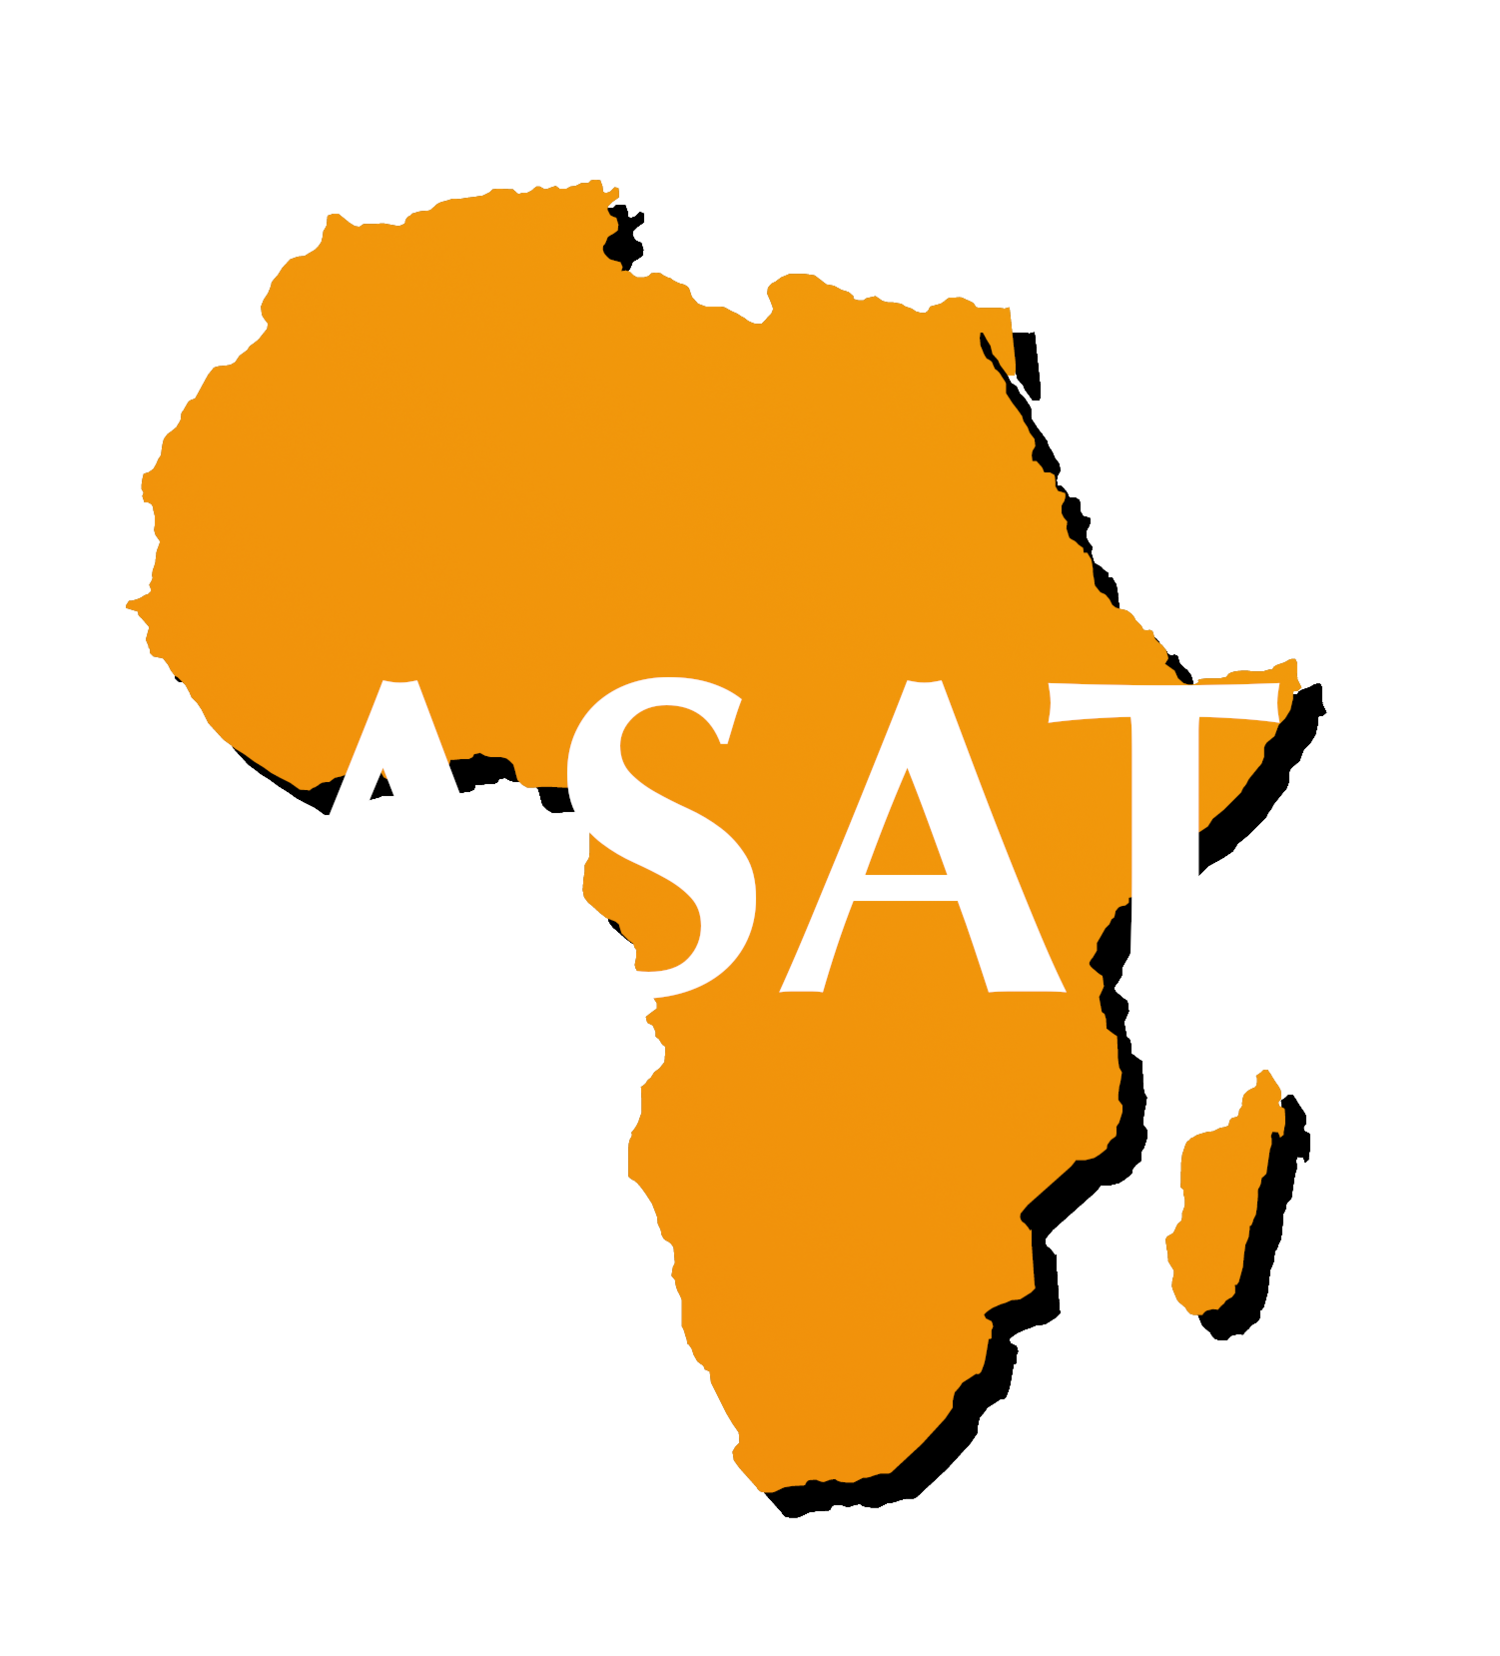 African Student Association Tilburg - ASAT